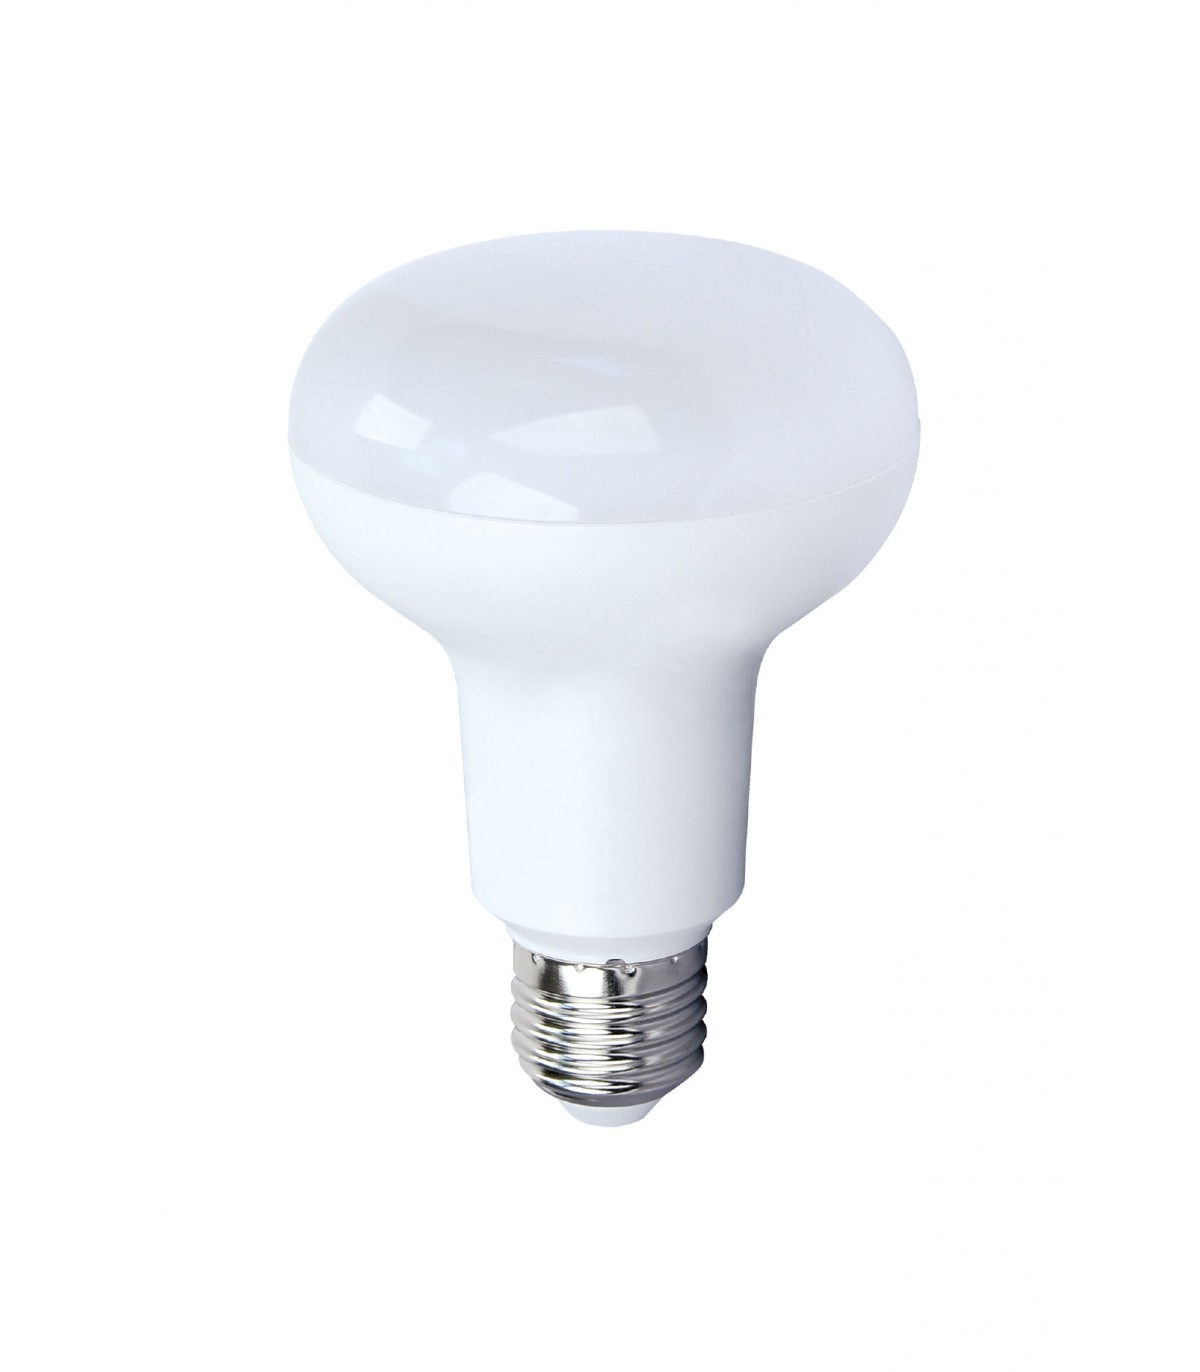 ARIC 20132  Ampoule LED réflecteur Ø63 E27 9W - Blanc froid